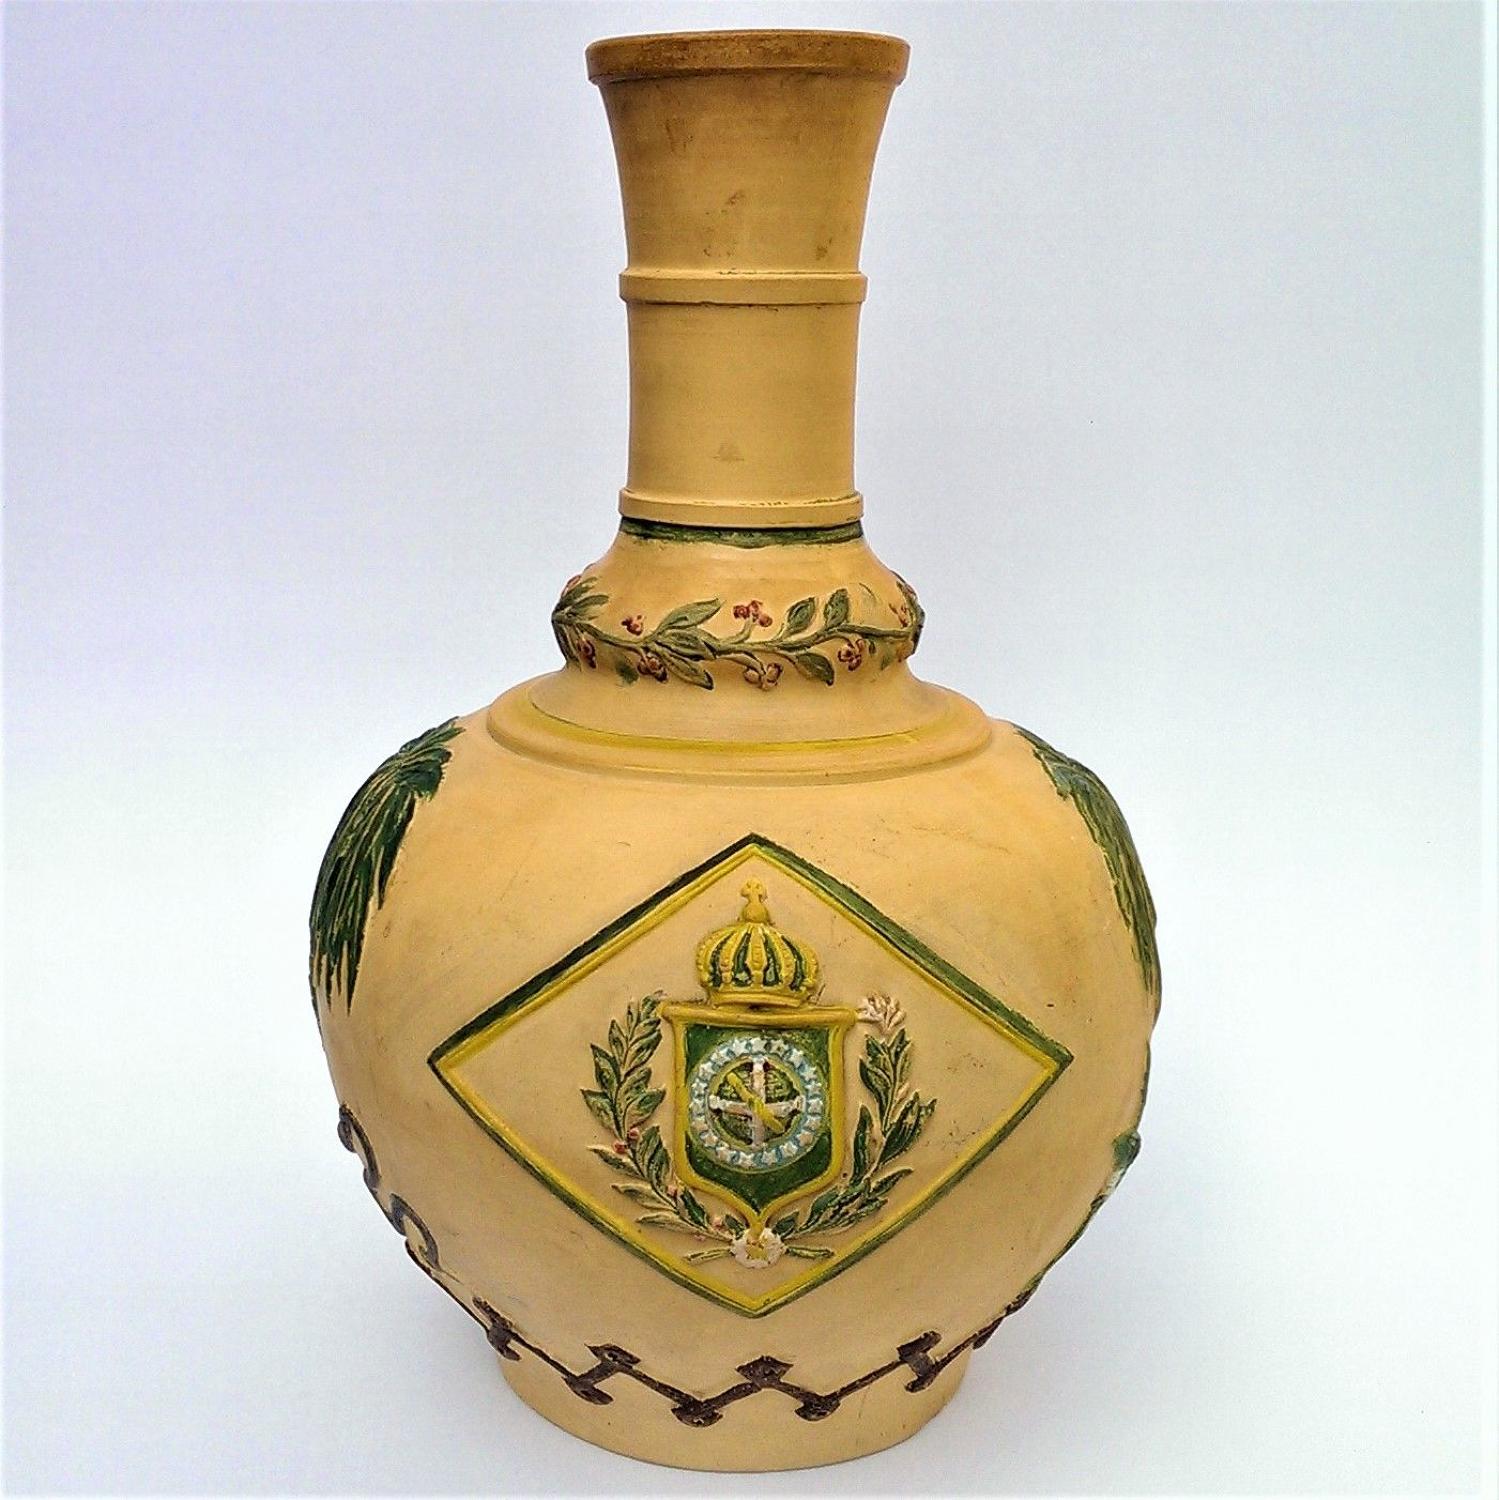 Empire of Brazil Terracotta Bottle-Vase Carafe c.1870s